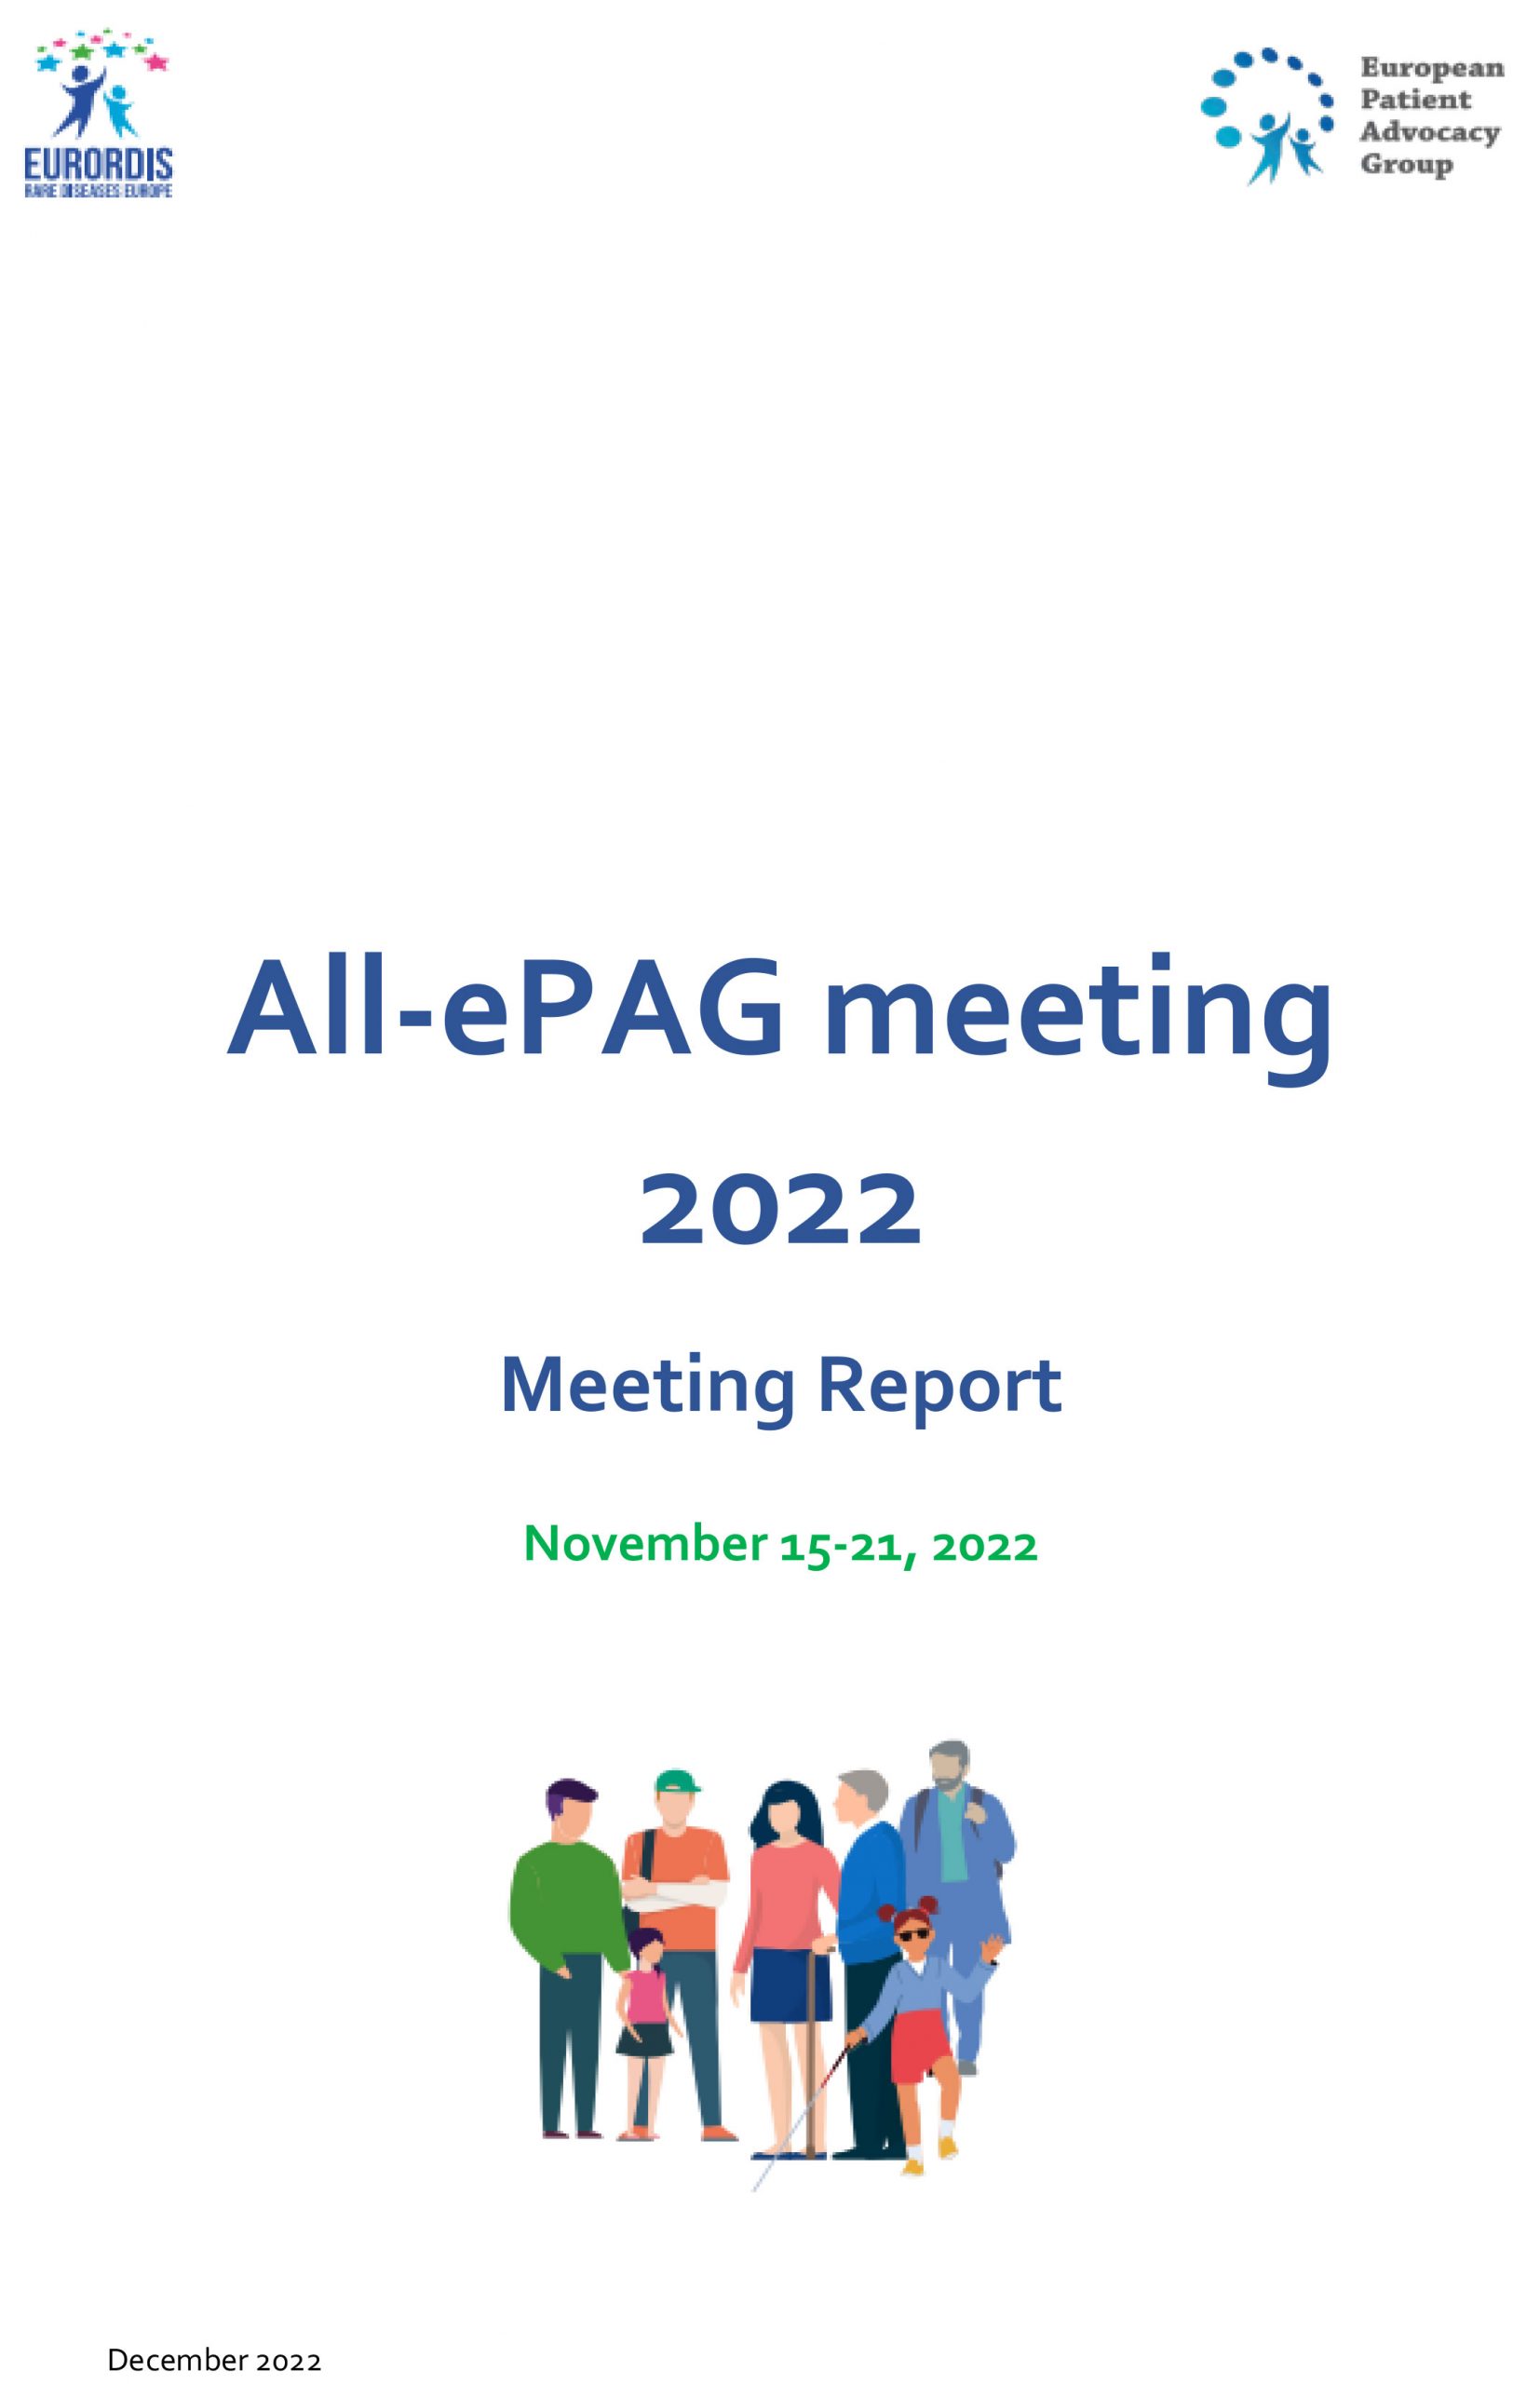 All-ePAG meeting 2022